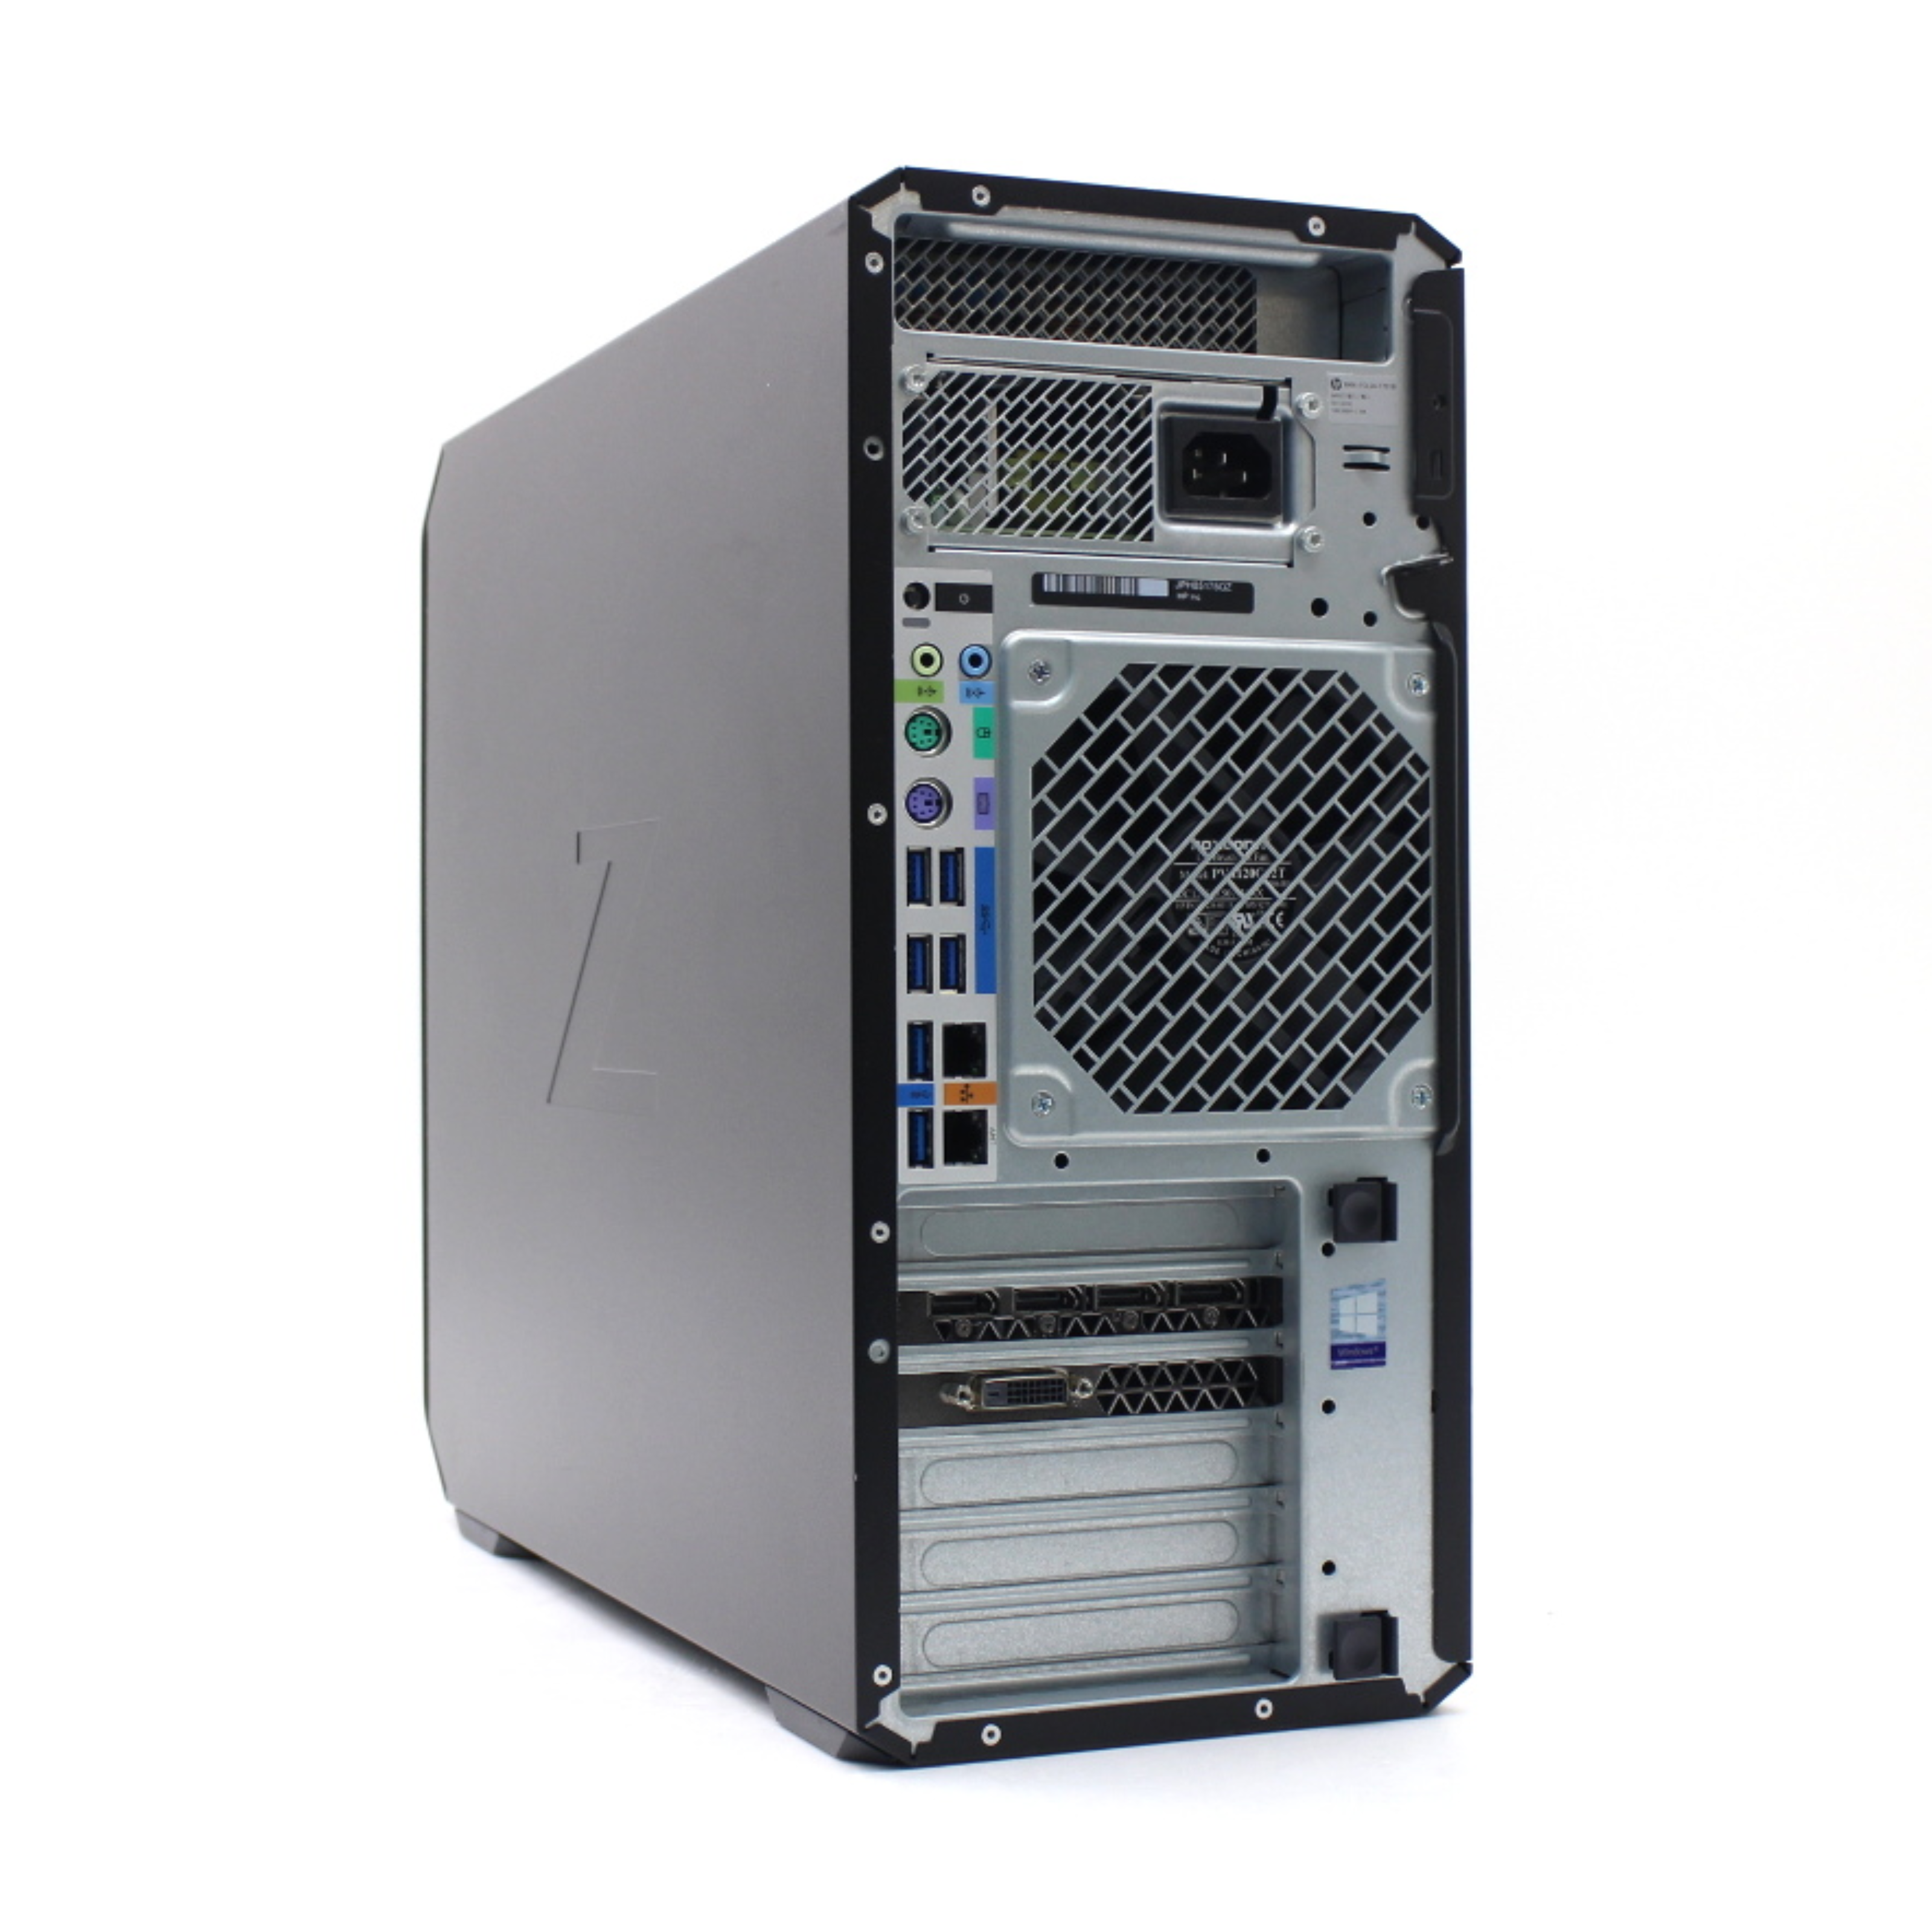 PC HP Z4 G4 WORKSTATION TOWER INTEL XEON W-2133 3.6GHZ RAM 32GB SSD 51